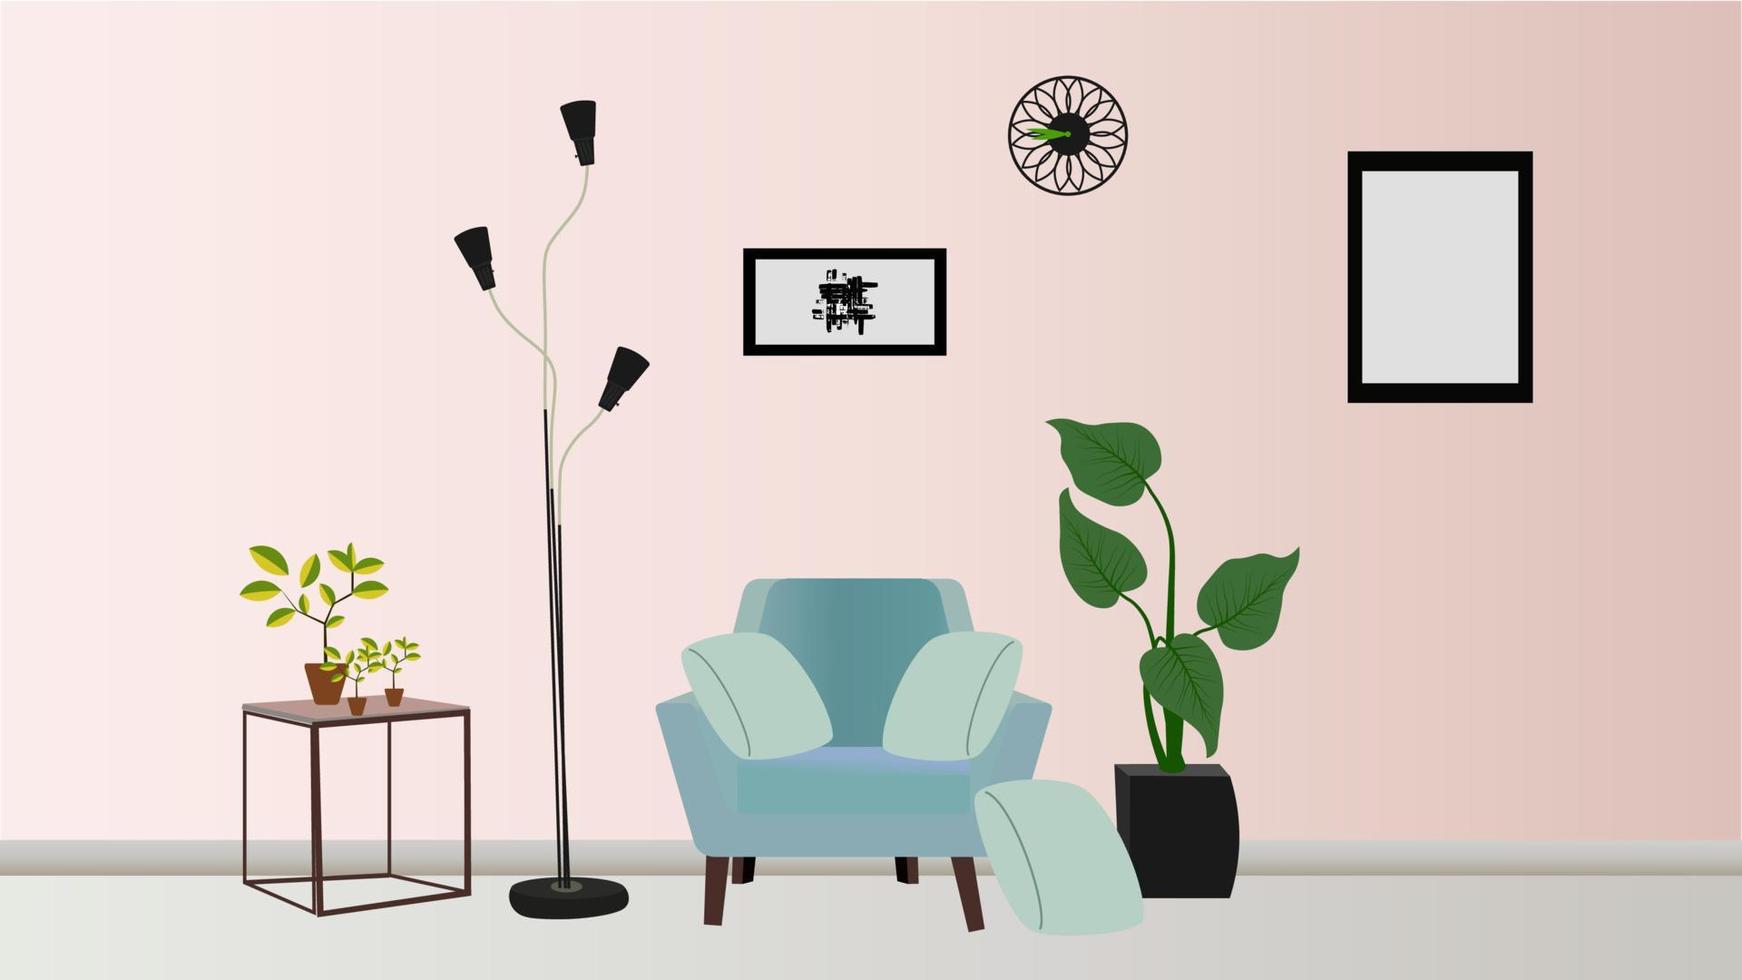 intérieur du salon. illustration plate moderne avec intérieur du salon dans des tons roses pastel, fond clair pour la conception de concept vecteur